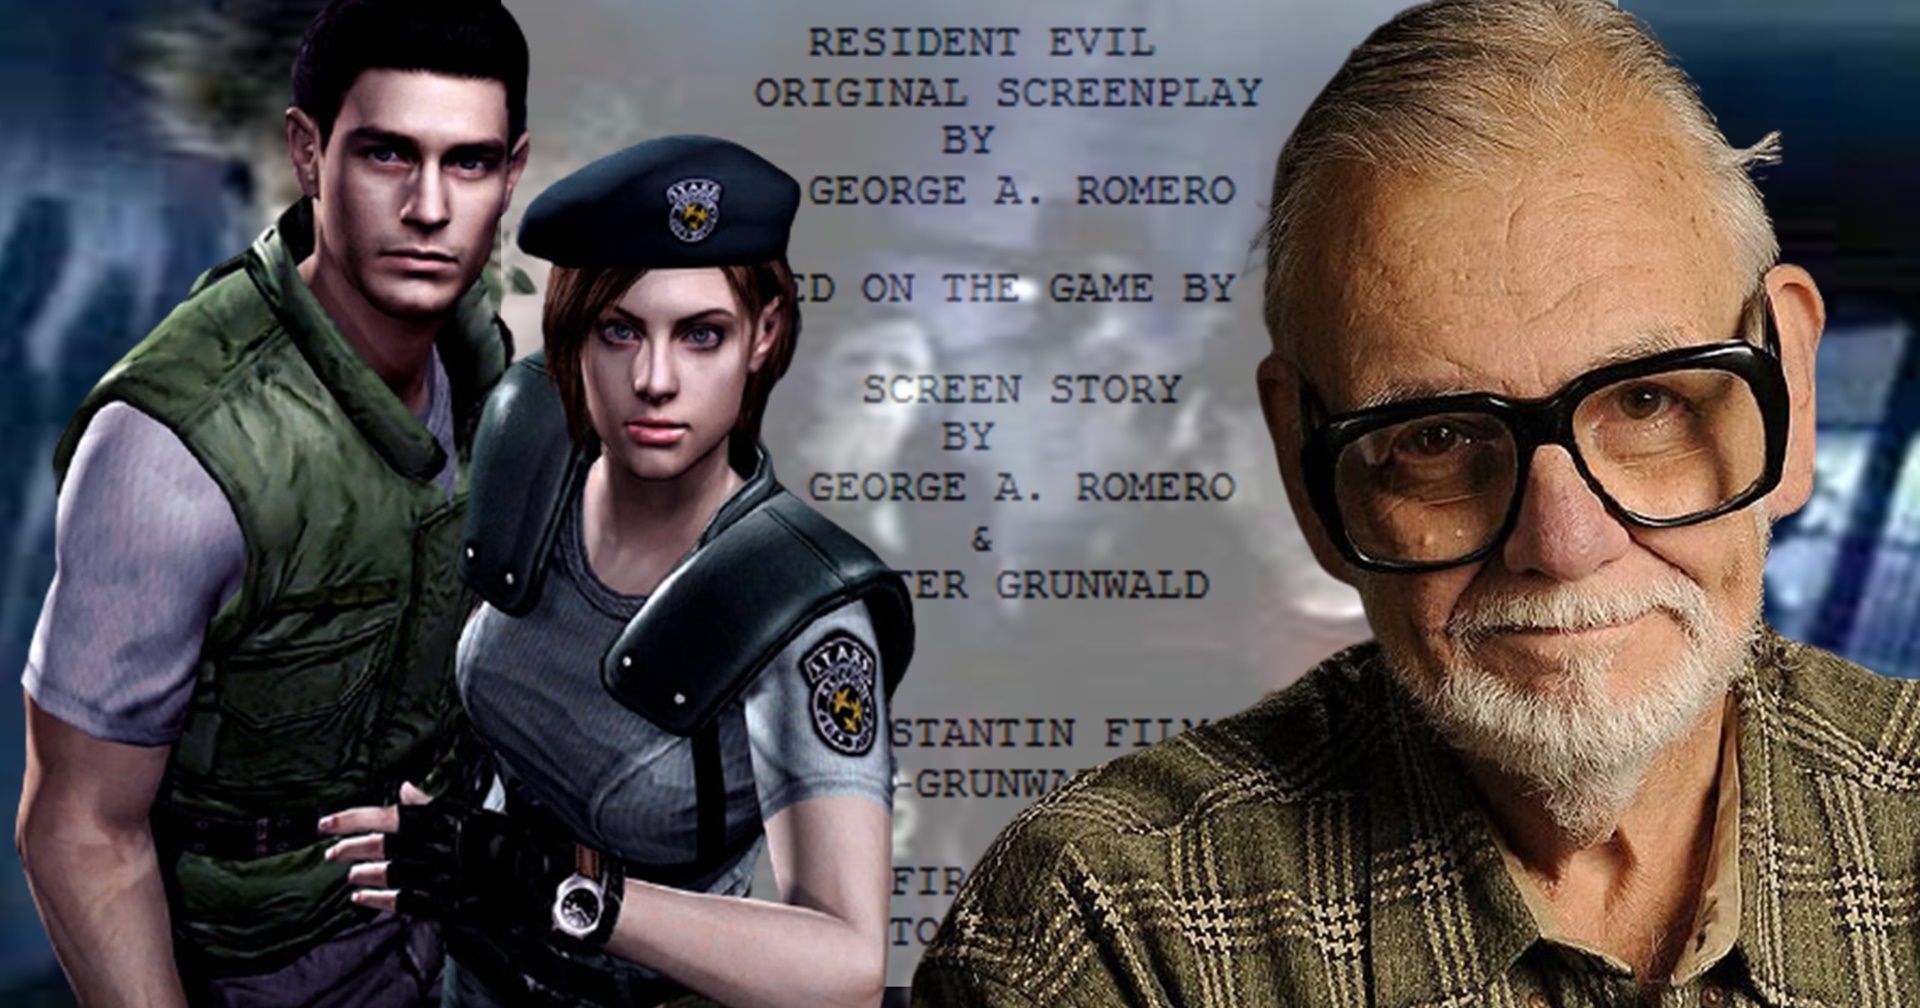 เราเกือบได้เห็นภาพยนตร์ Resident Evil ของ George A. Romero เจ้าพ่อหนังซอมบี้ในตำนาน